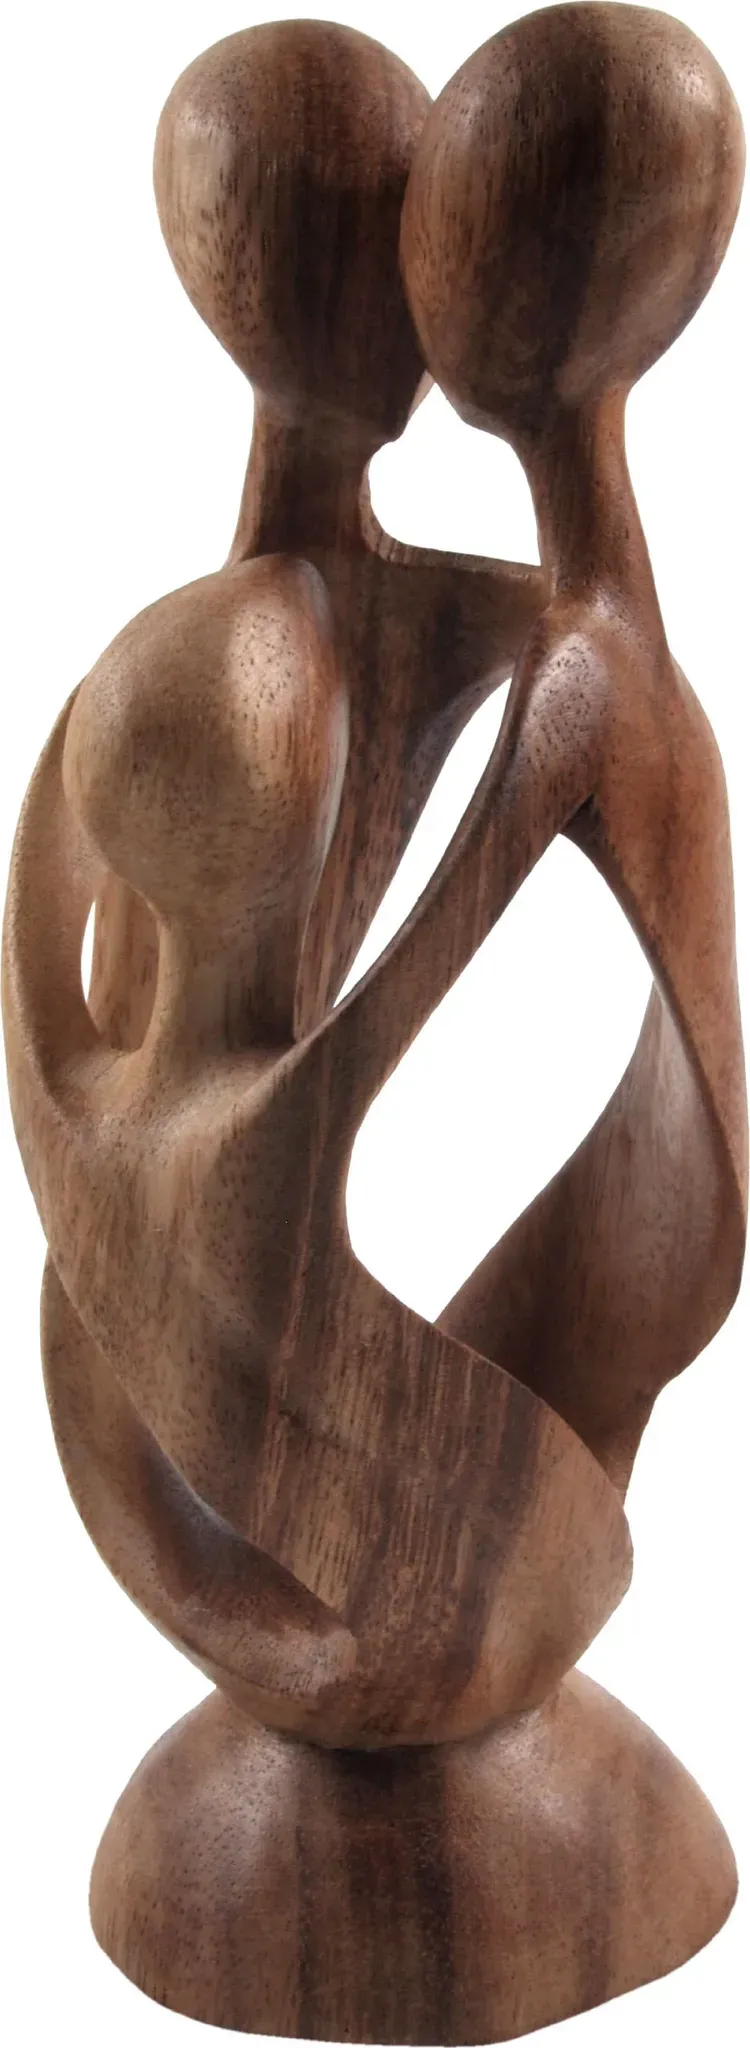 GURU SHOP Holzfigur, Statue, Deko Objekt Feng Shui - `Familie`, Braun, Farbe/Höhe: 20 cm/Hell, Dekoobjekte